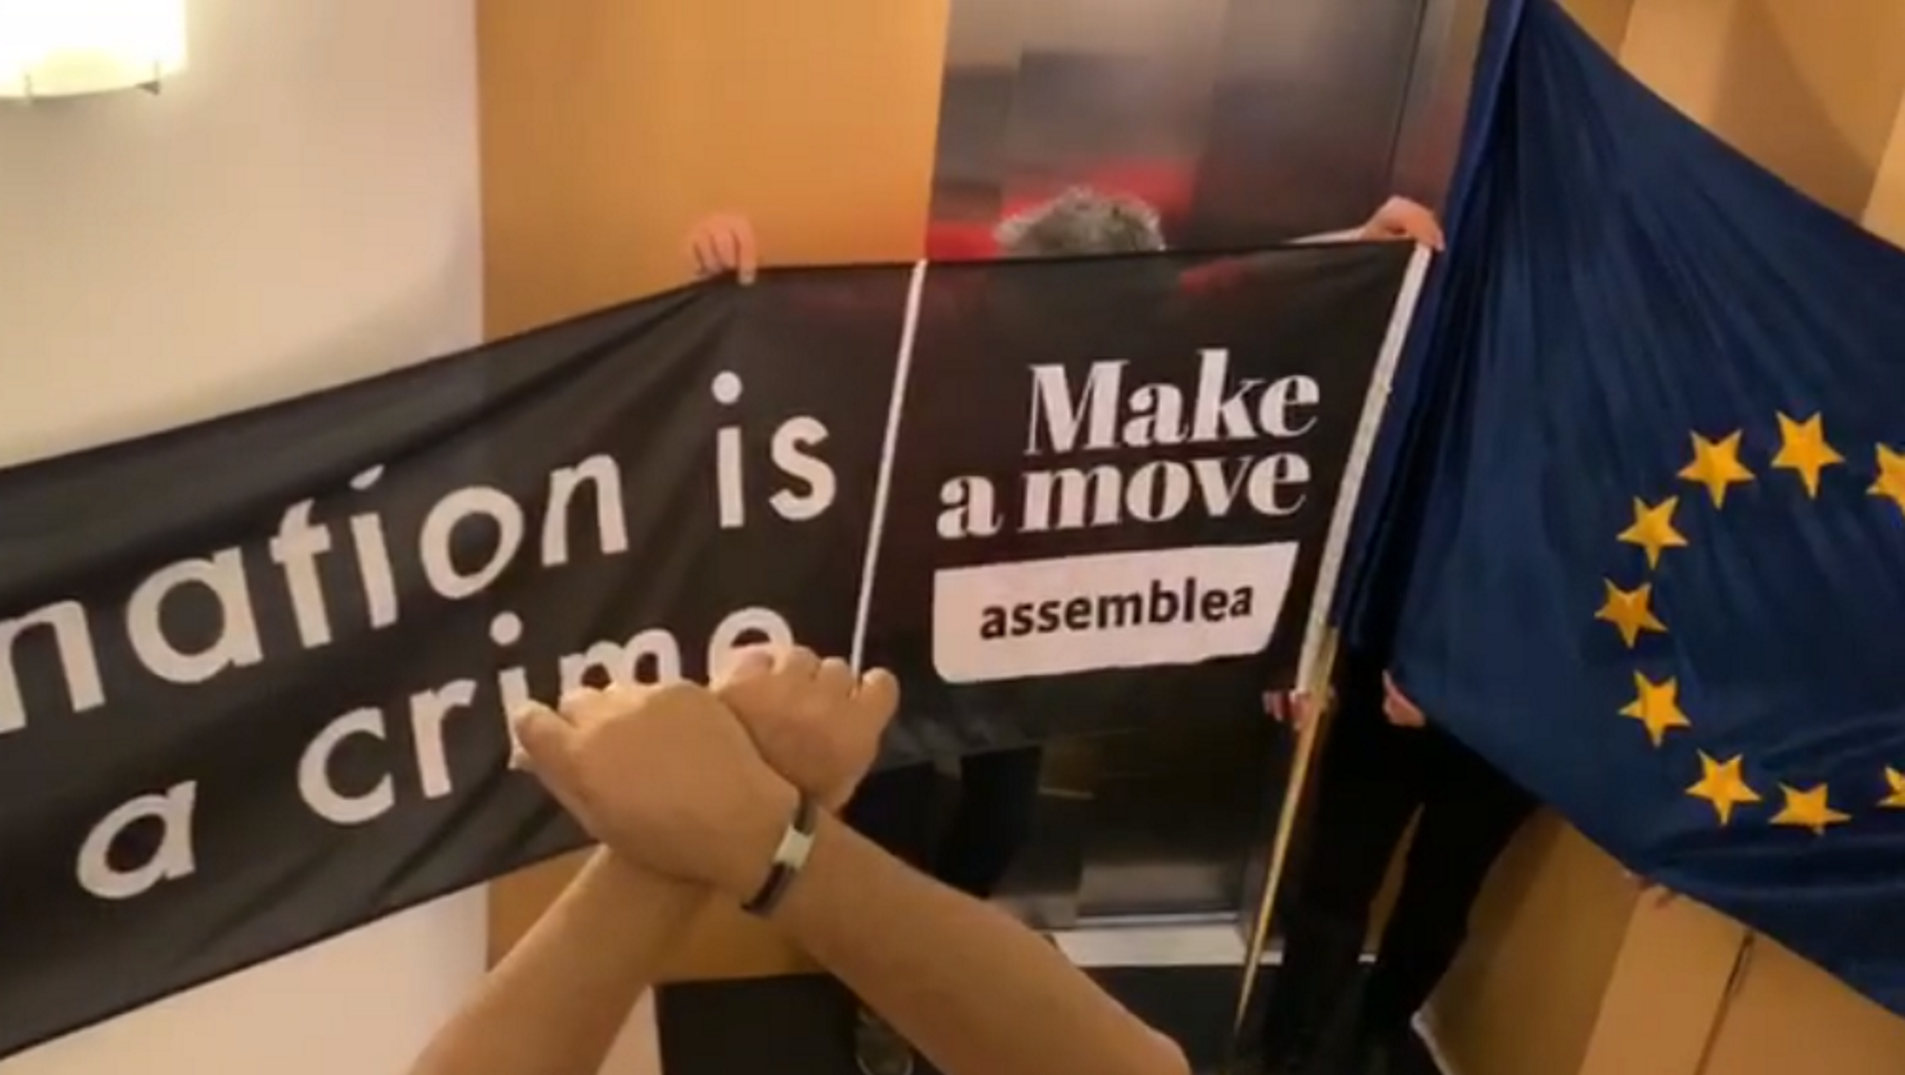 VIDEO: Missatge dels tancats a la Comissió Europea: "Aquí comença la independència"